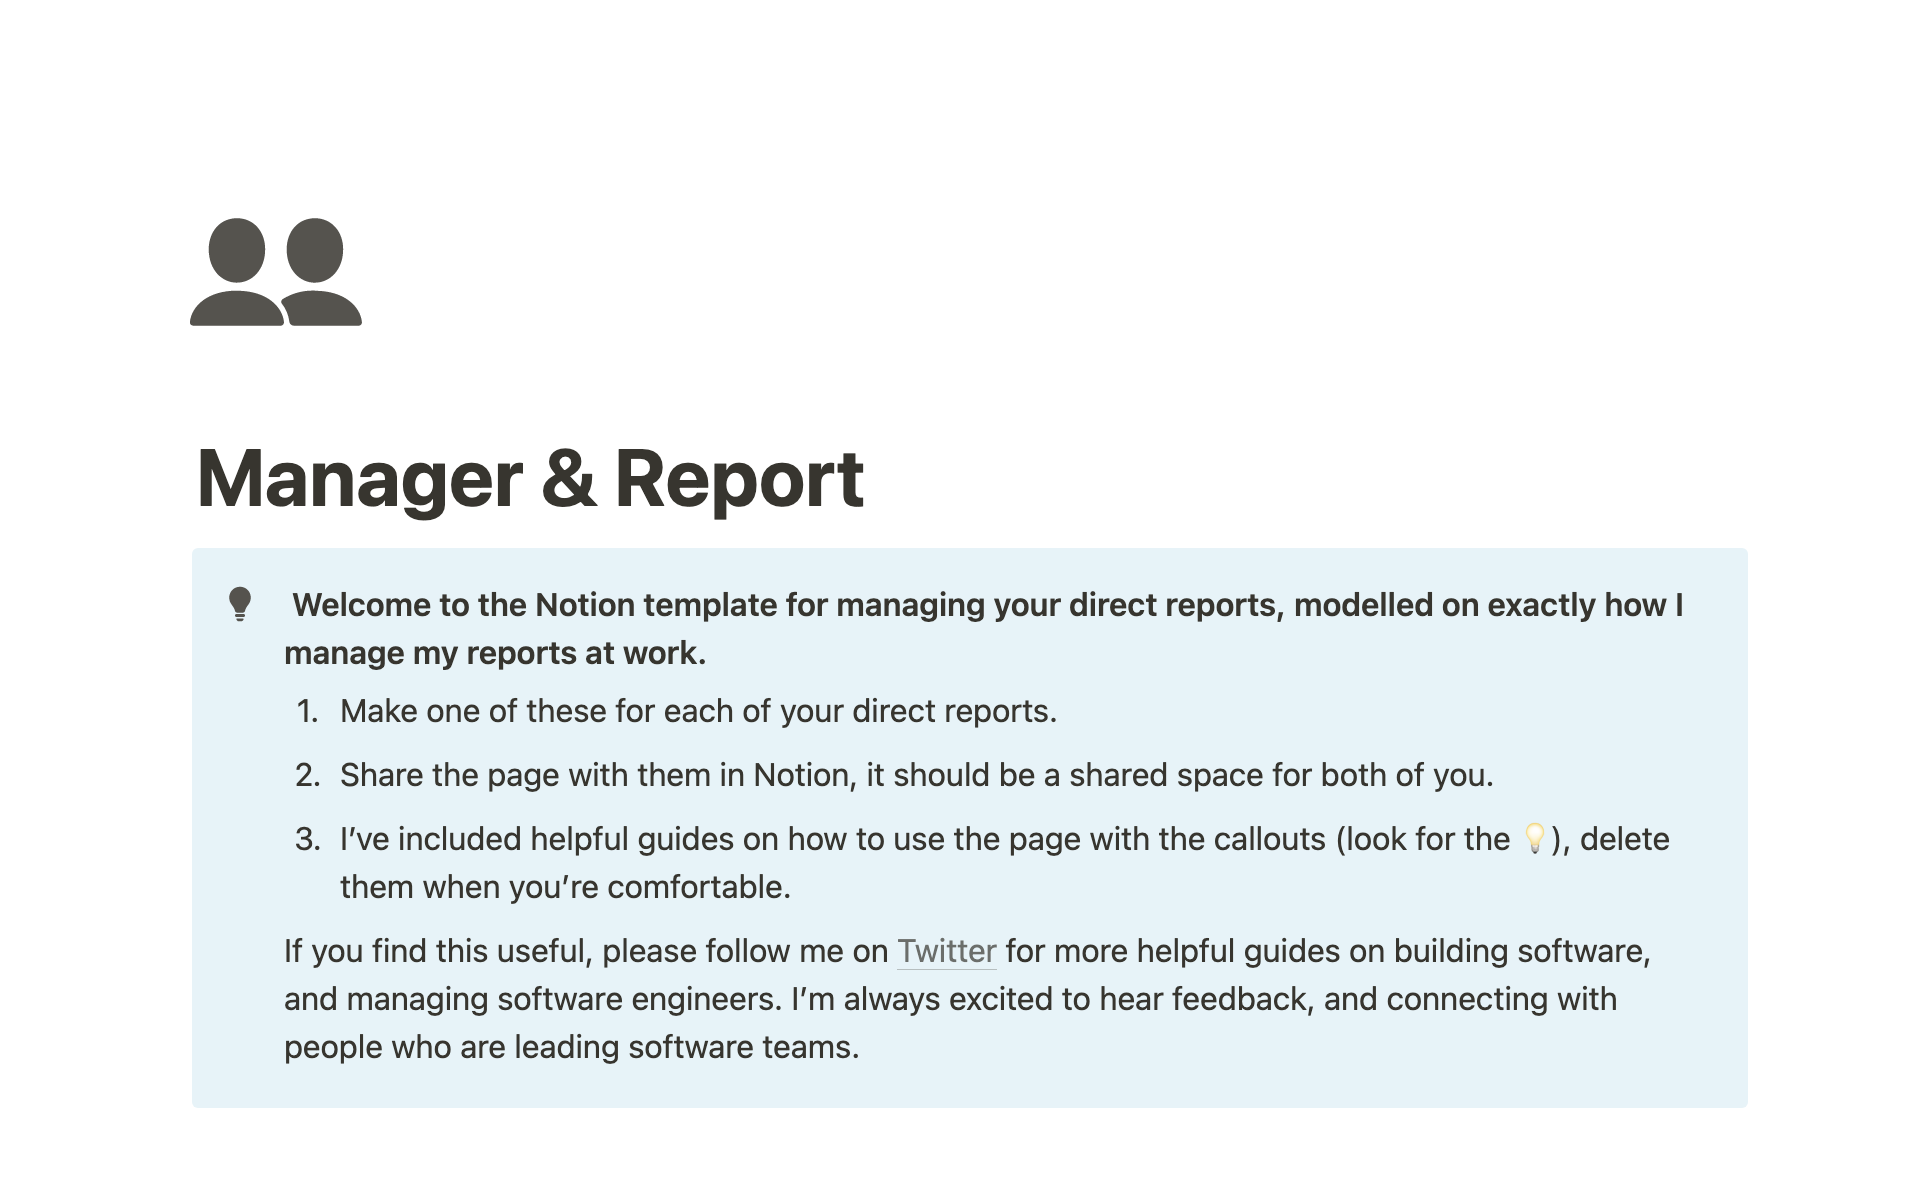 Vista previa de una plantilla para Manager & Report